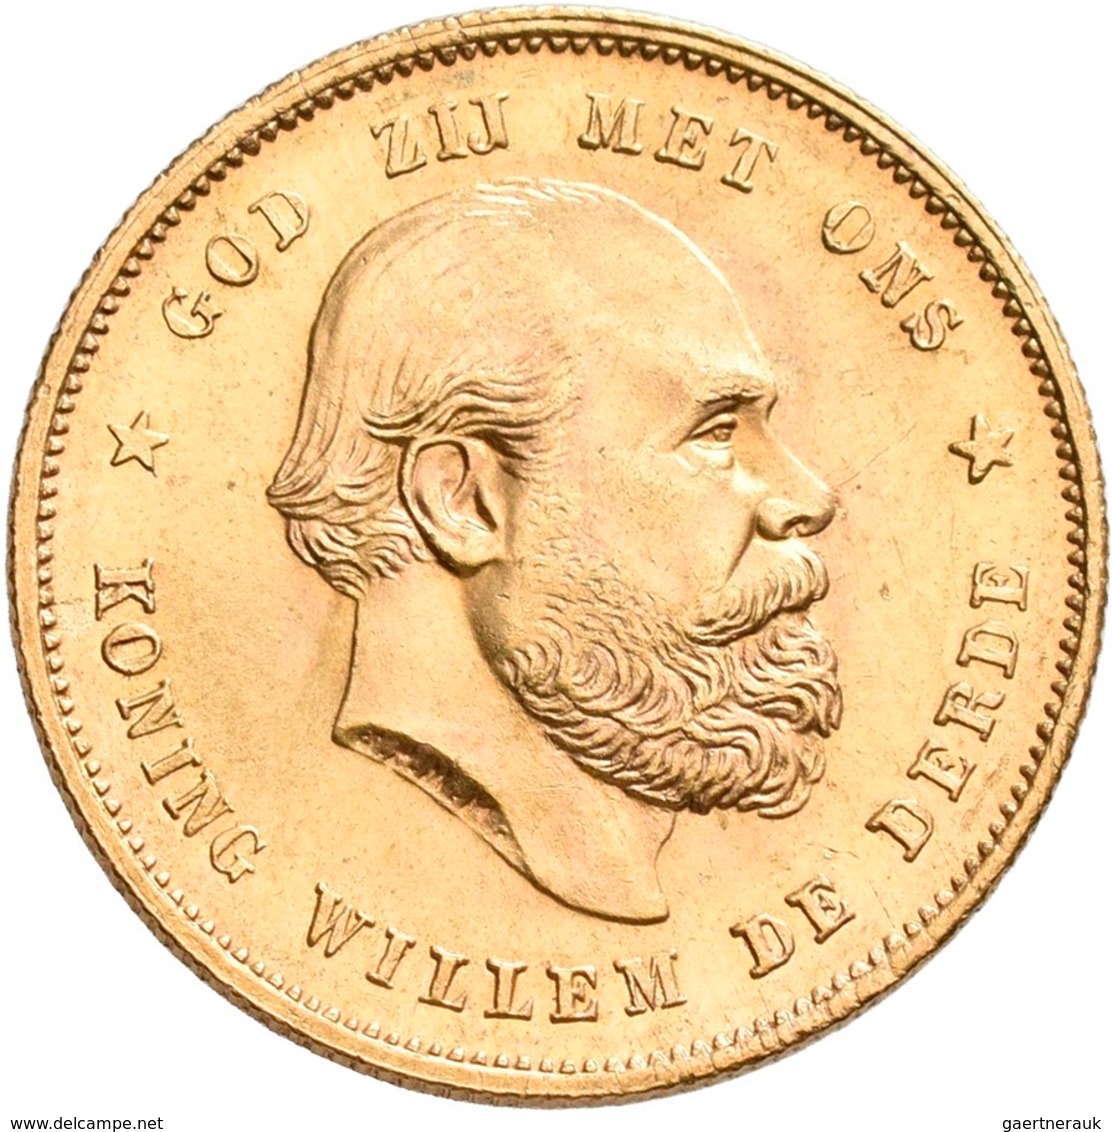 Niederlande - Anlagegold: Lot 4 Goldmünzen: 10 Gulden 1876 (2x), 1917 Und 1932. Jede Münze Wiegt 6,7 - Zilveren En Gouden Munten